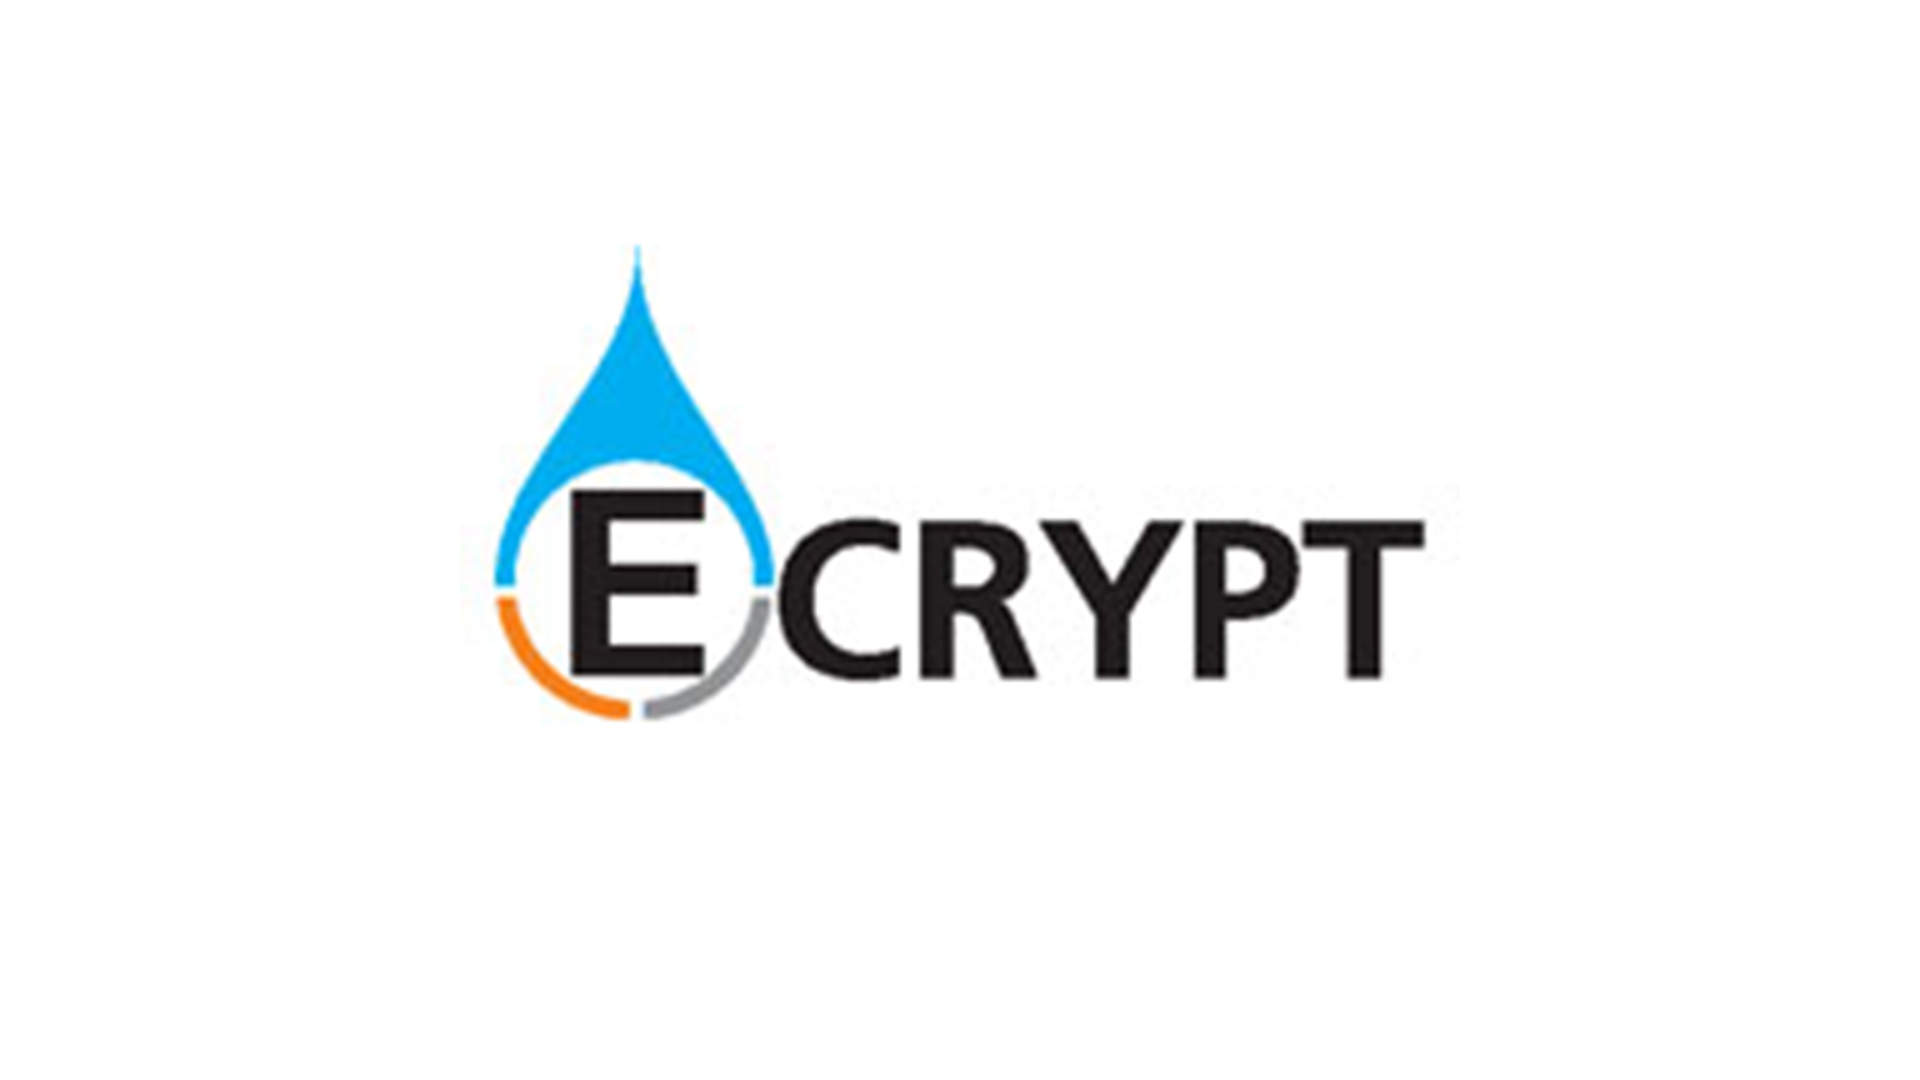 Ecrypt